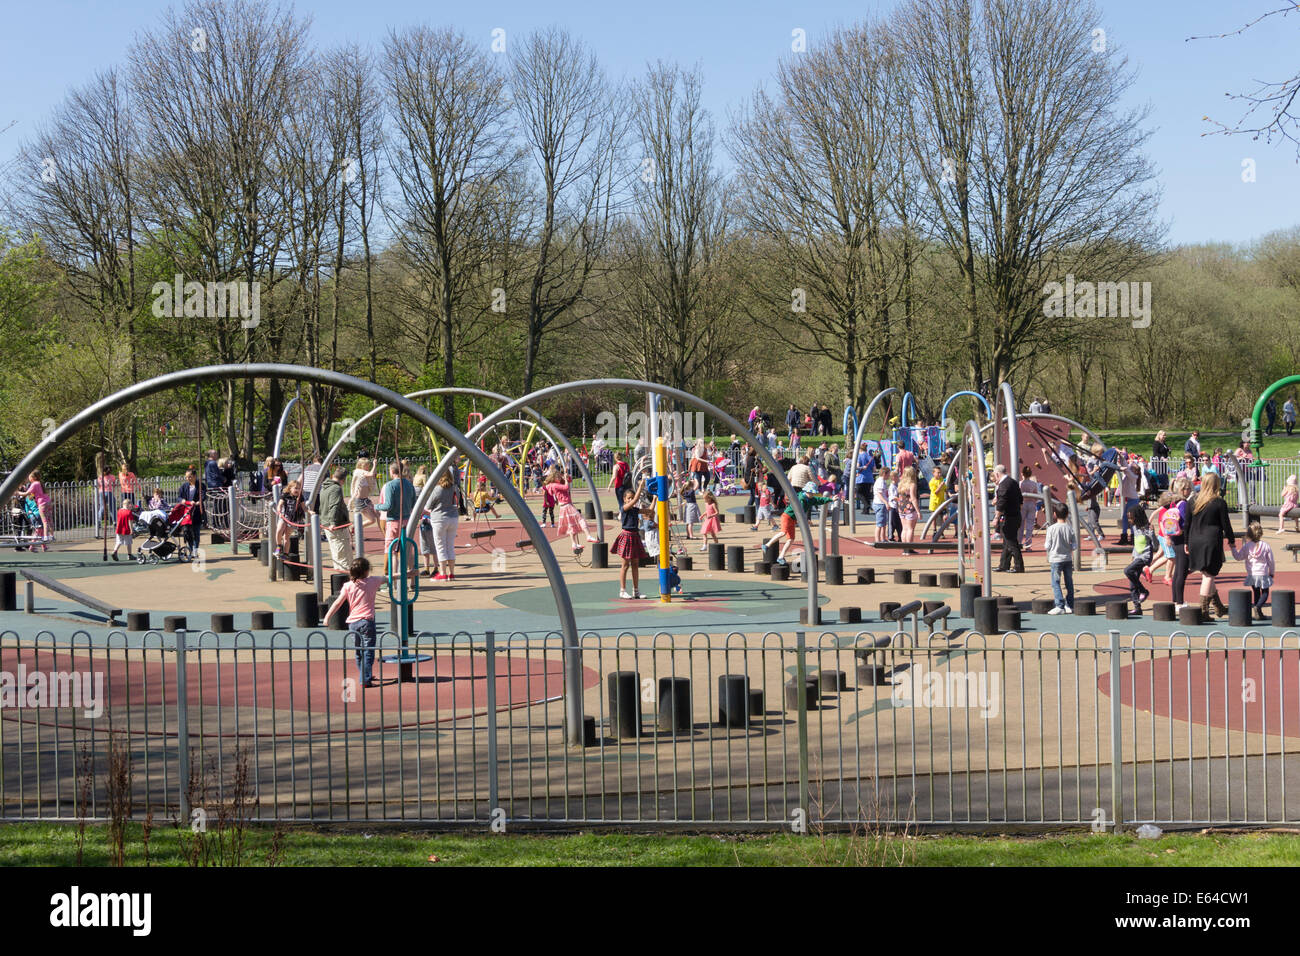 De nombreux enfants jouant dans l'aire de jeu, le plus grand quartier de Bolton, à Moses Gate Country Park, Farnworth. Banque D'Images